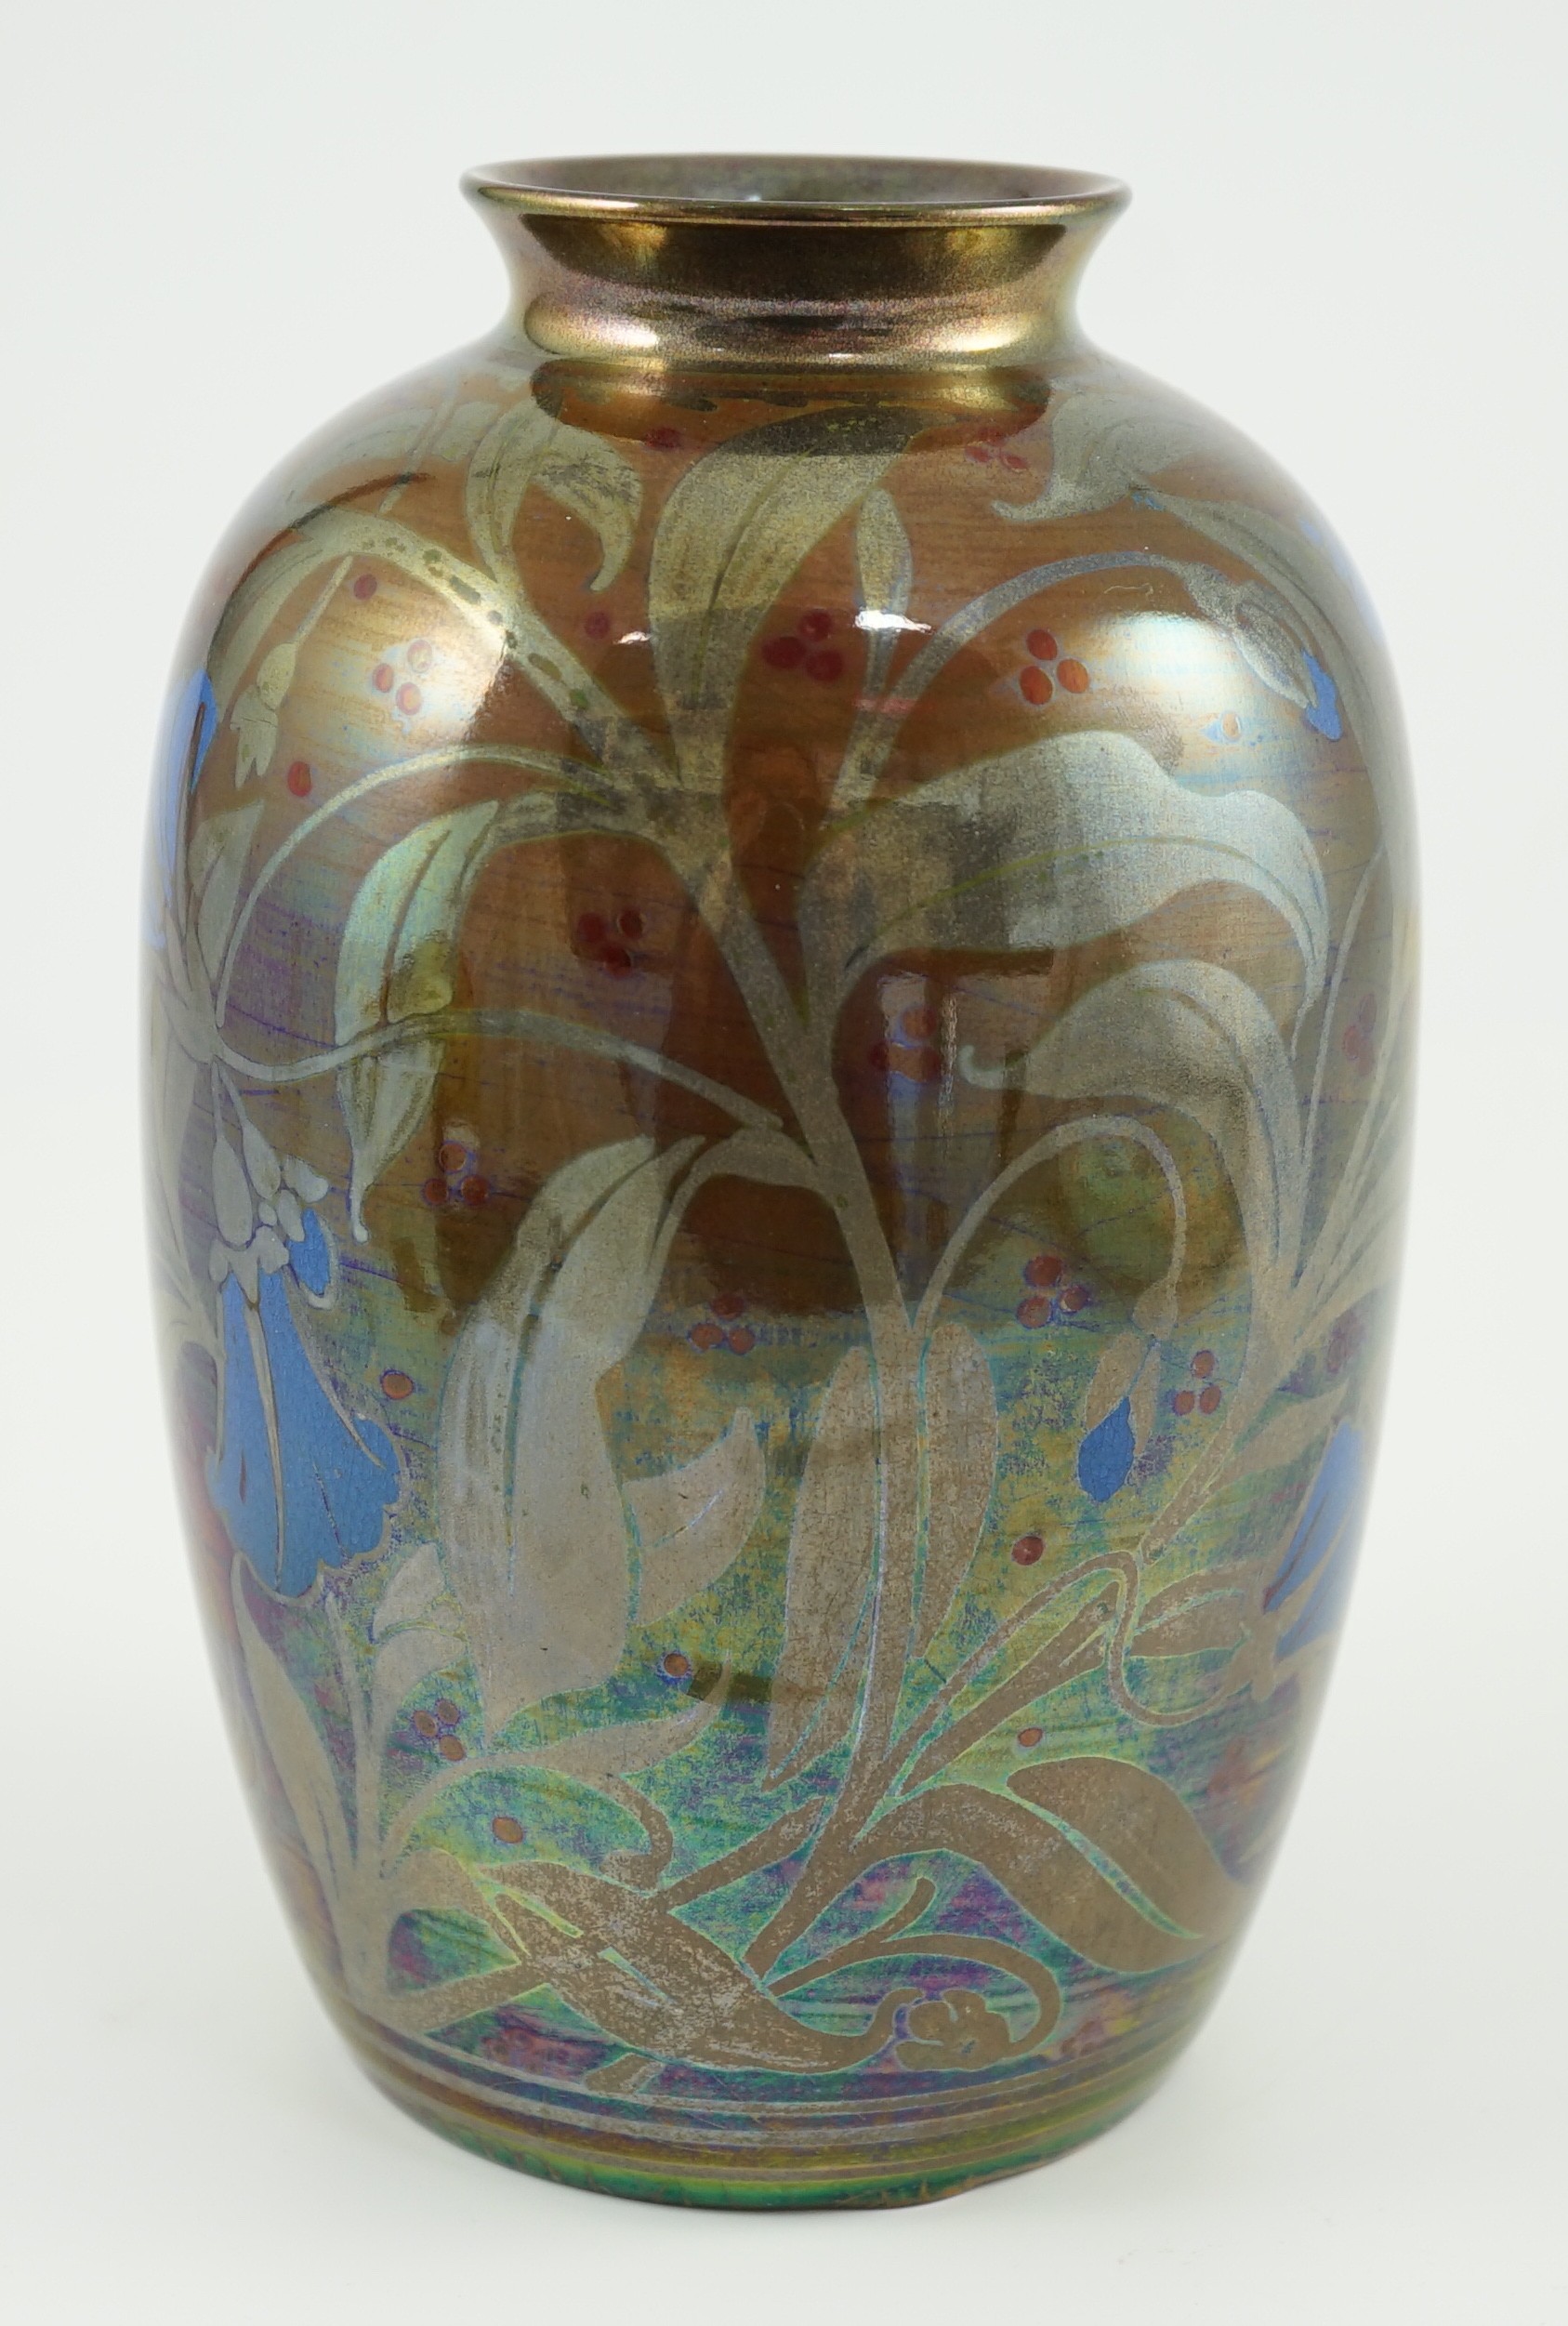 A Pilkington's Lancastrian ovoid vase, by William S. Mycock, 1923, 19cm high